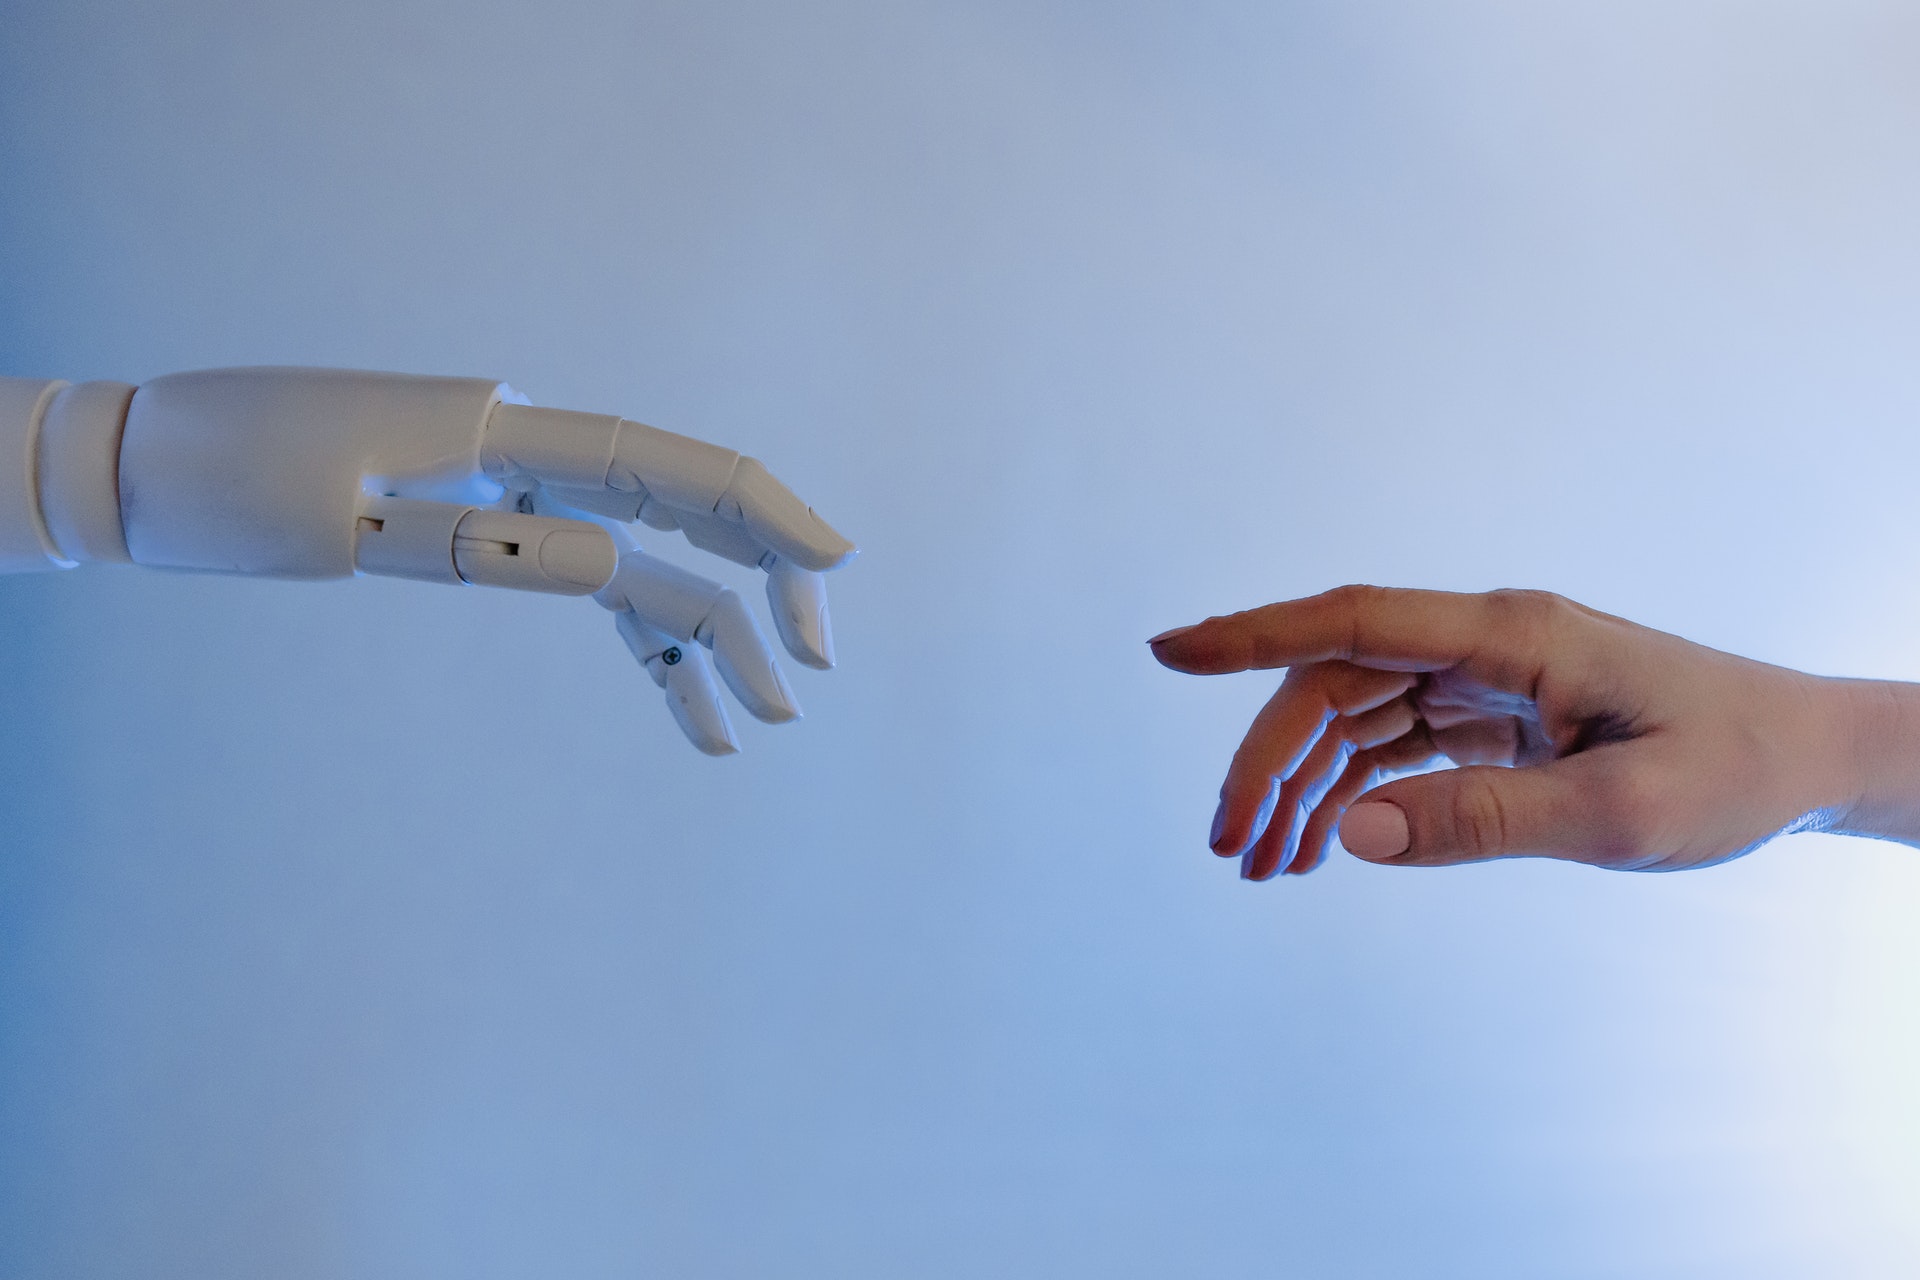 robotic and human hand